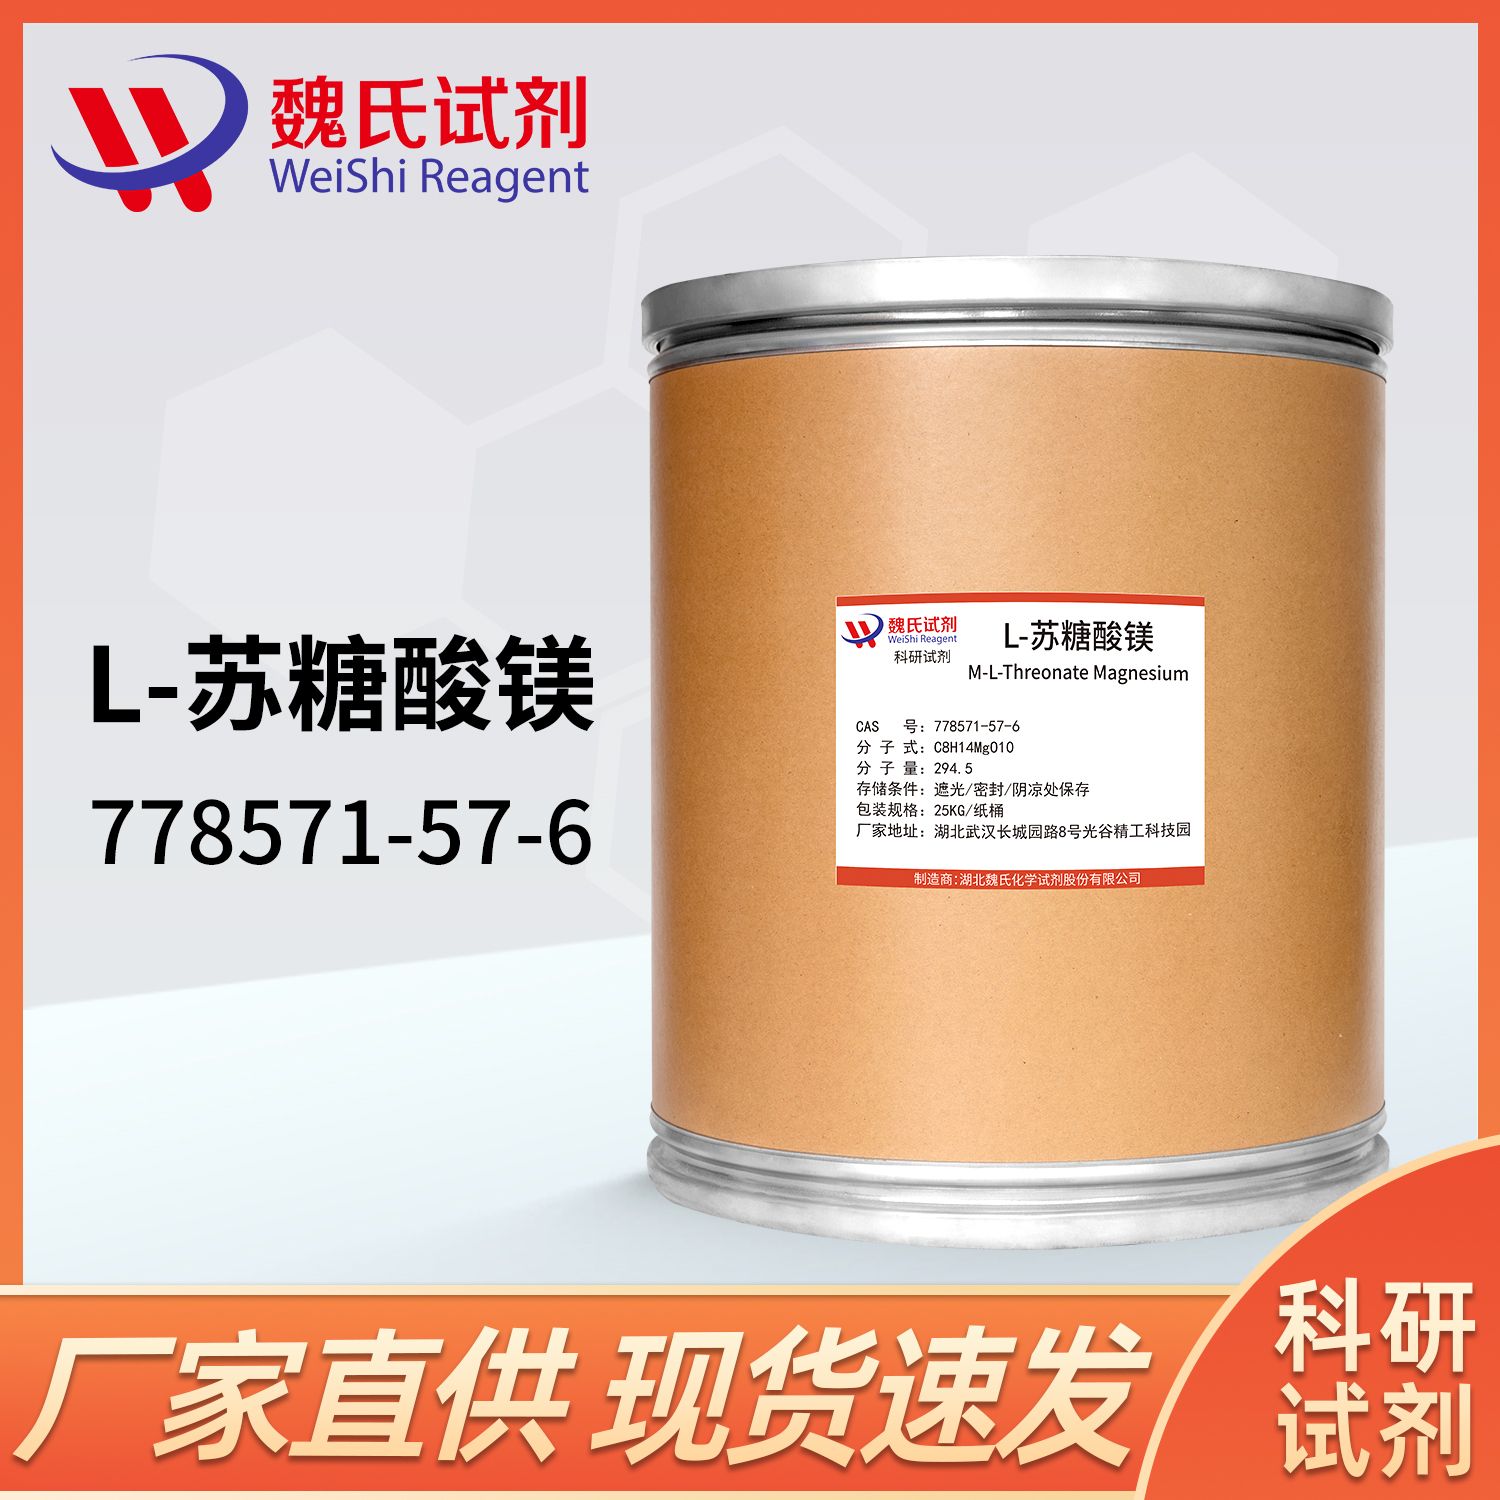 L-苏糖酸镁-778571-57-6-L-Threonic acid magnesium salt